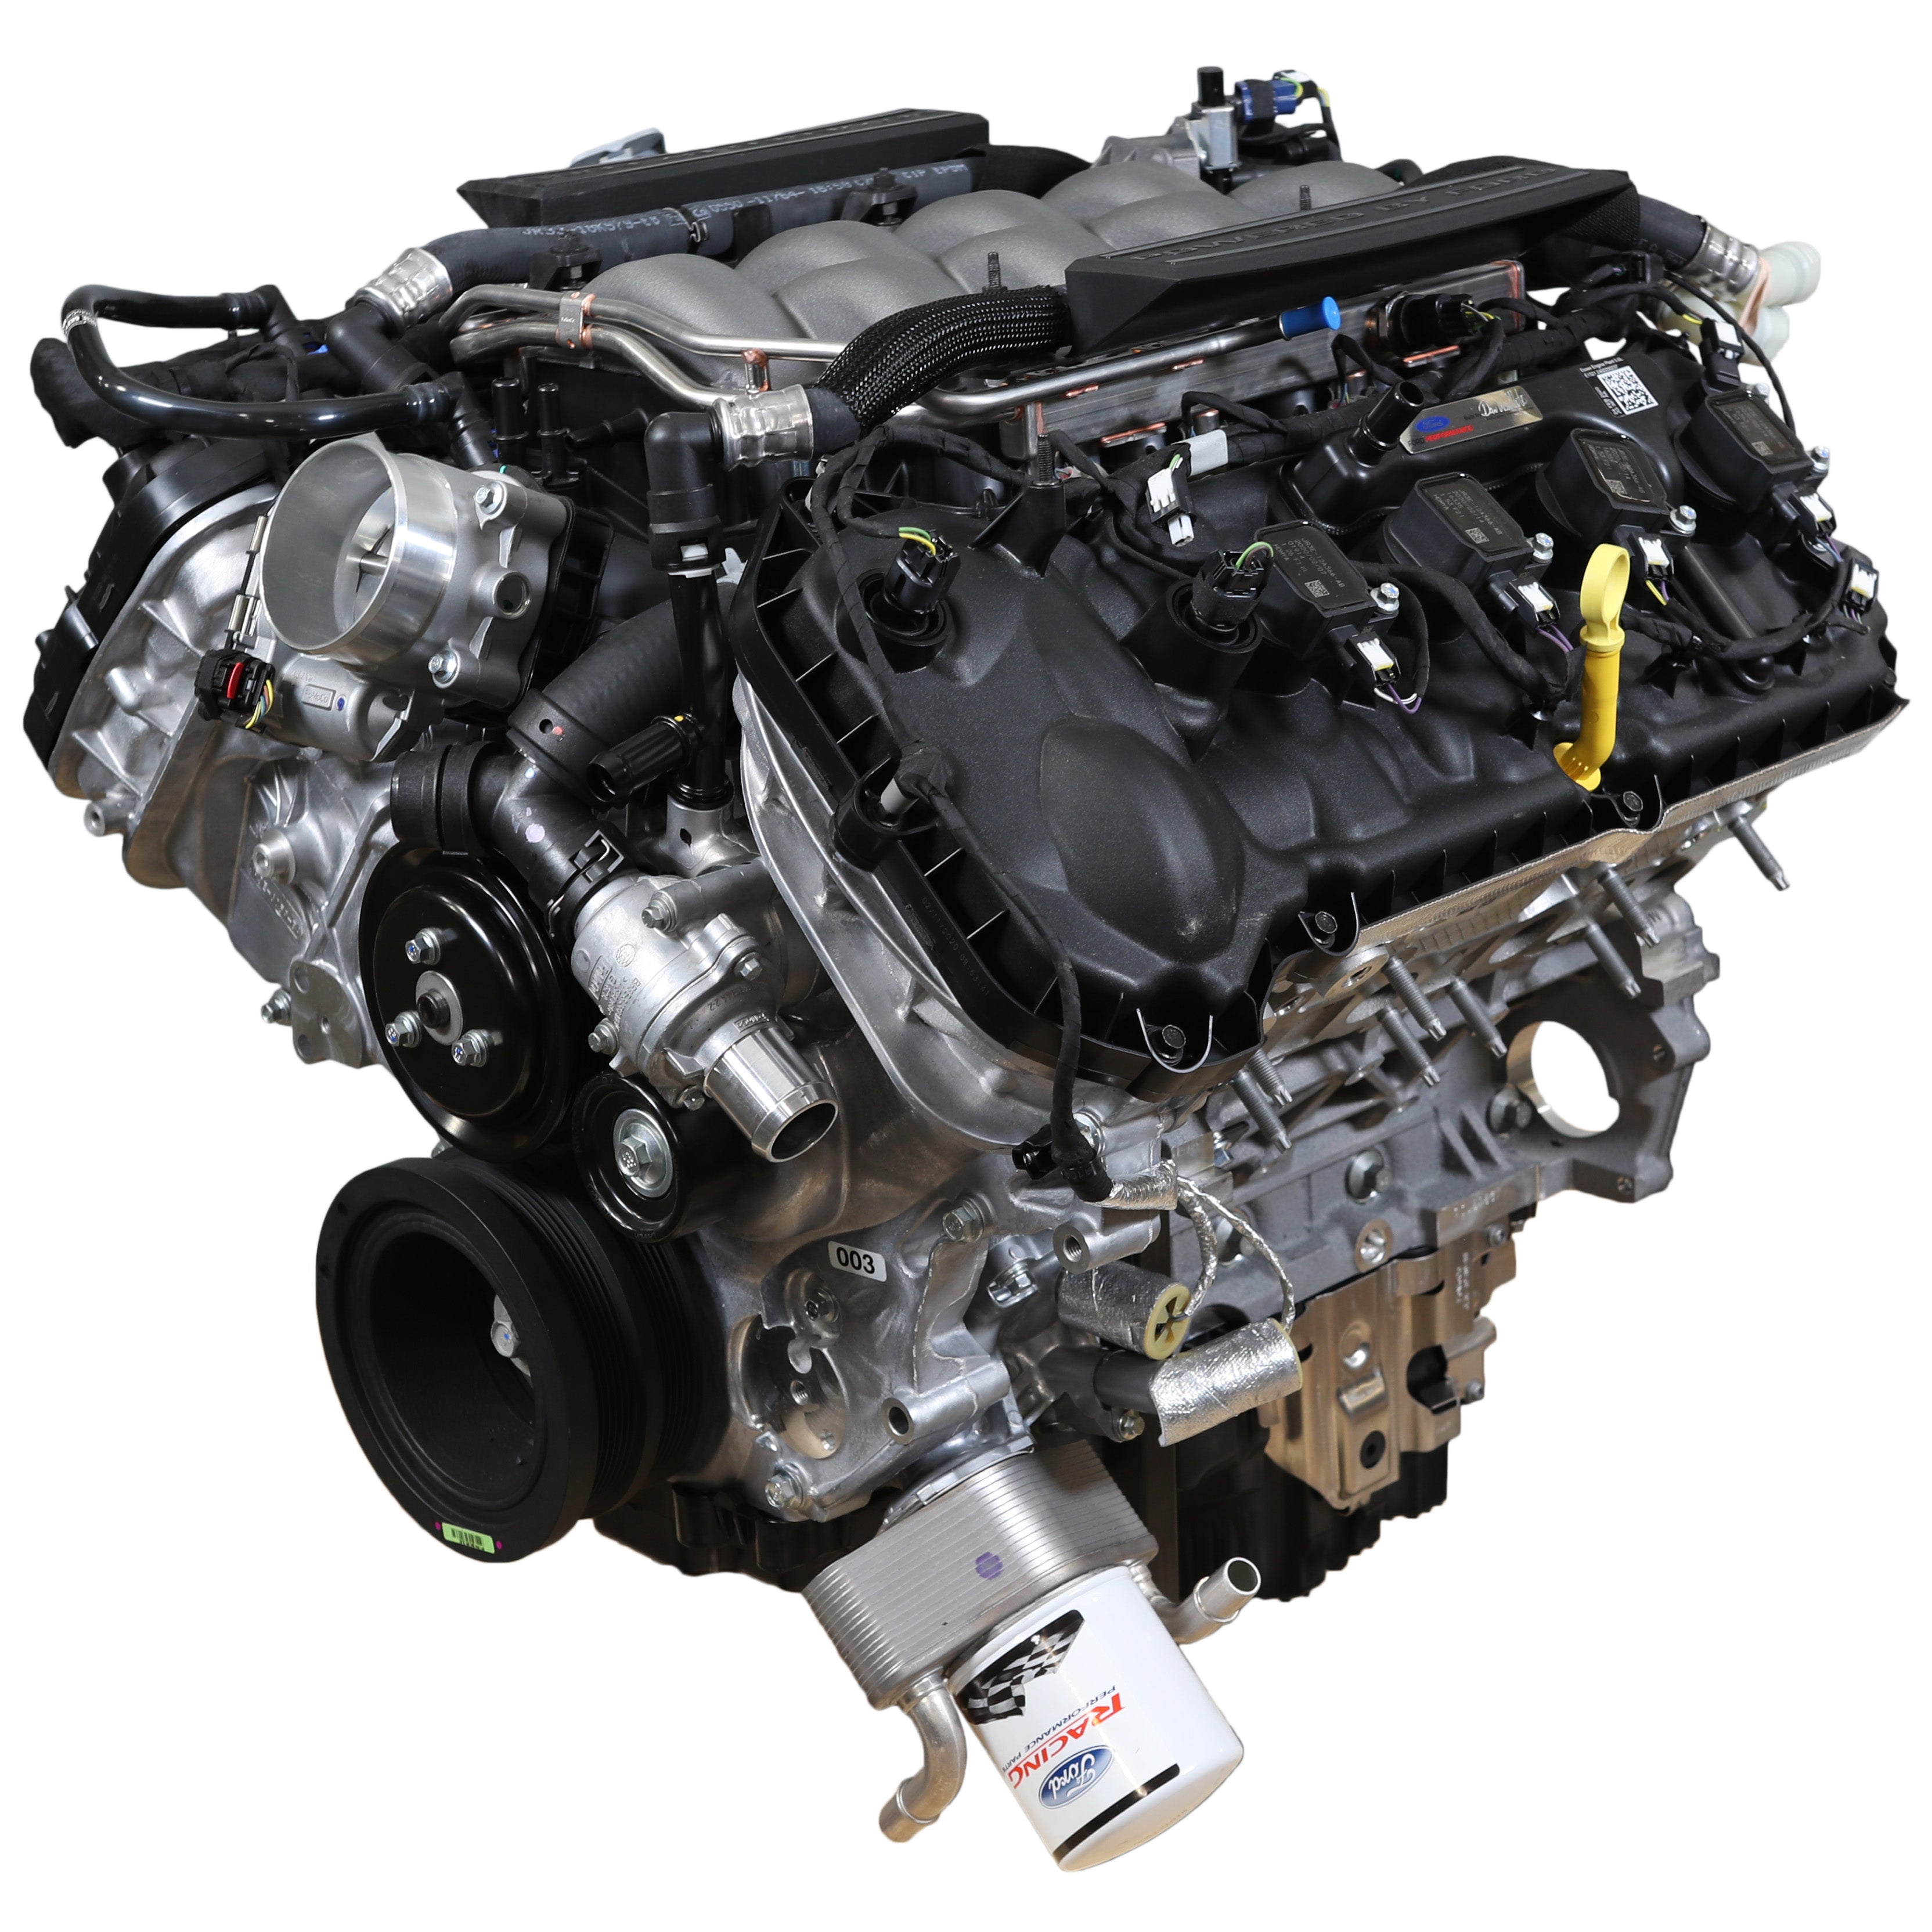 Moteur Ford Performance 5.0L "Aluminator" Gen 3 Crate - Faible compression pour les constructions FI